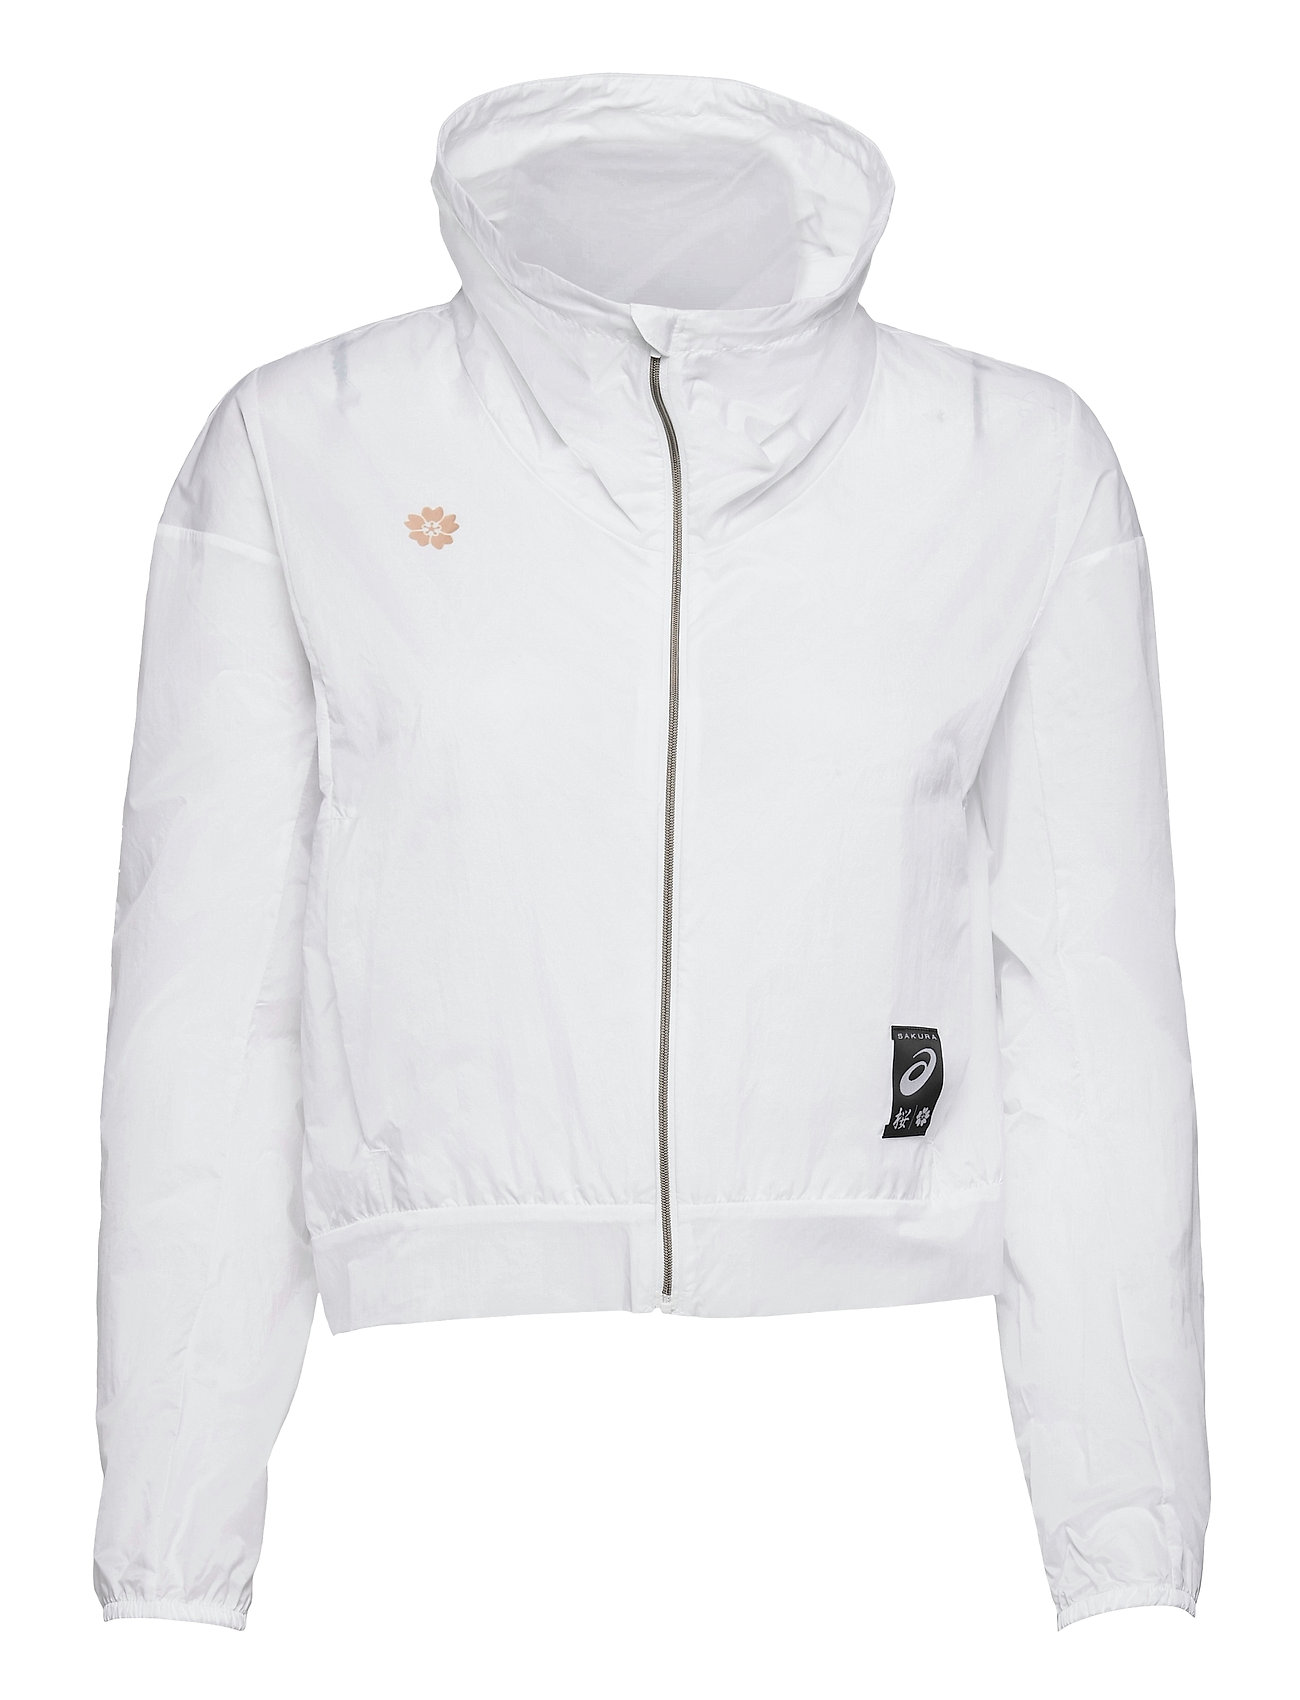 Sakura Jacket Outerwear Sport Jackets Valkoinen Asics